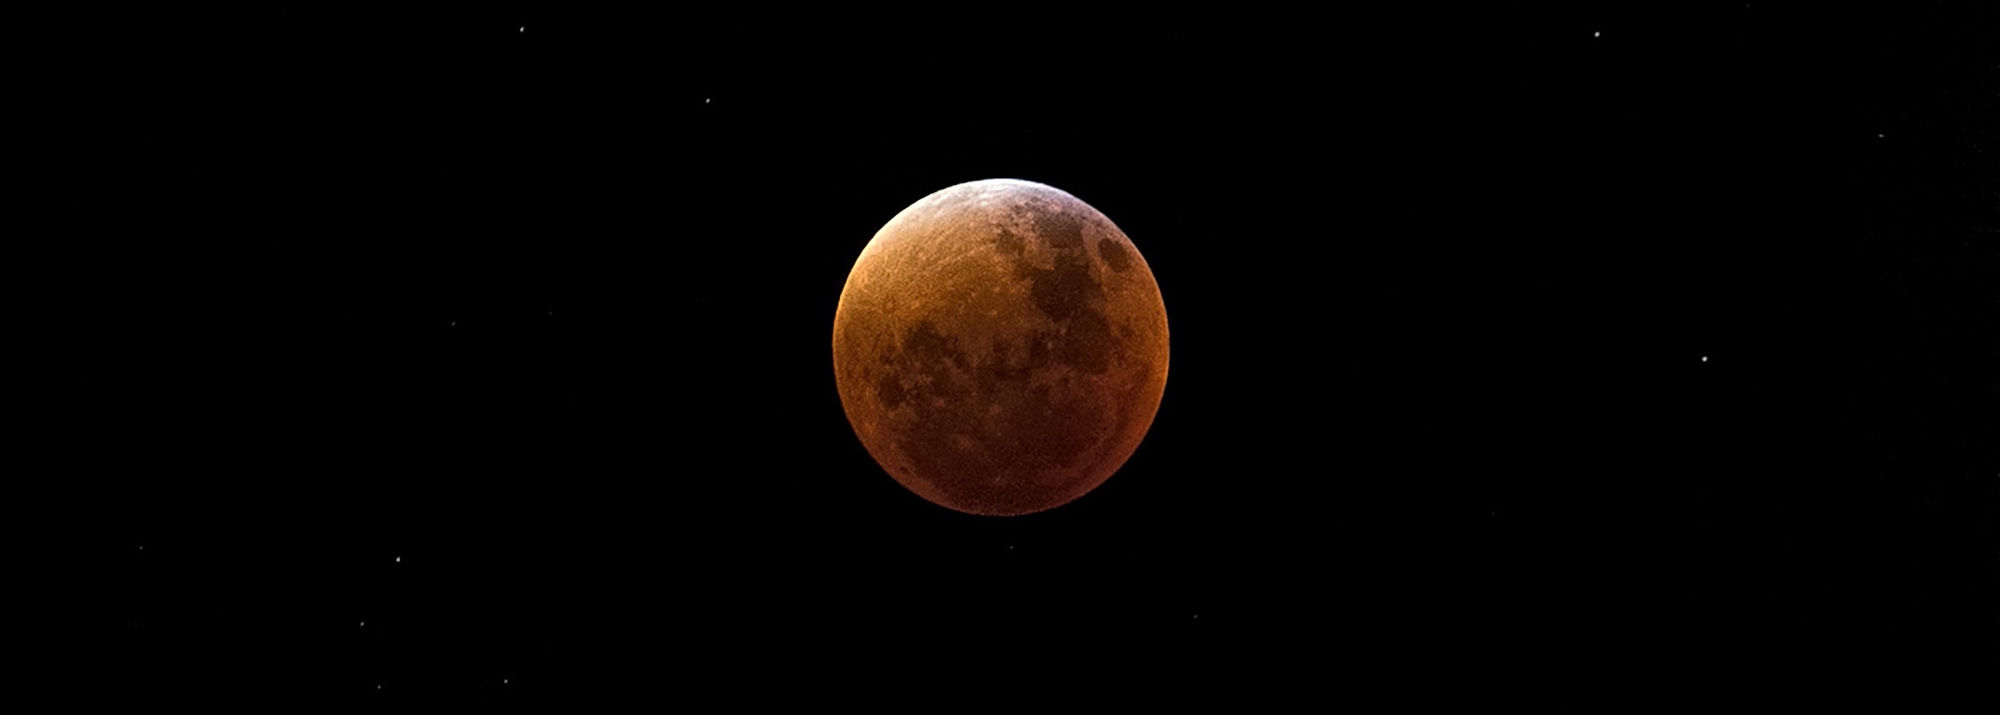 коли дивитись місячне затемнення сонячне 2020 рік цікаві статті на файнд вей ком юа